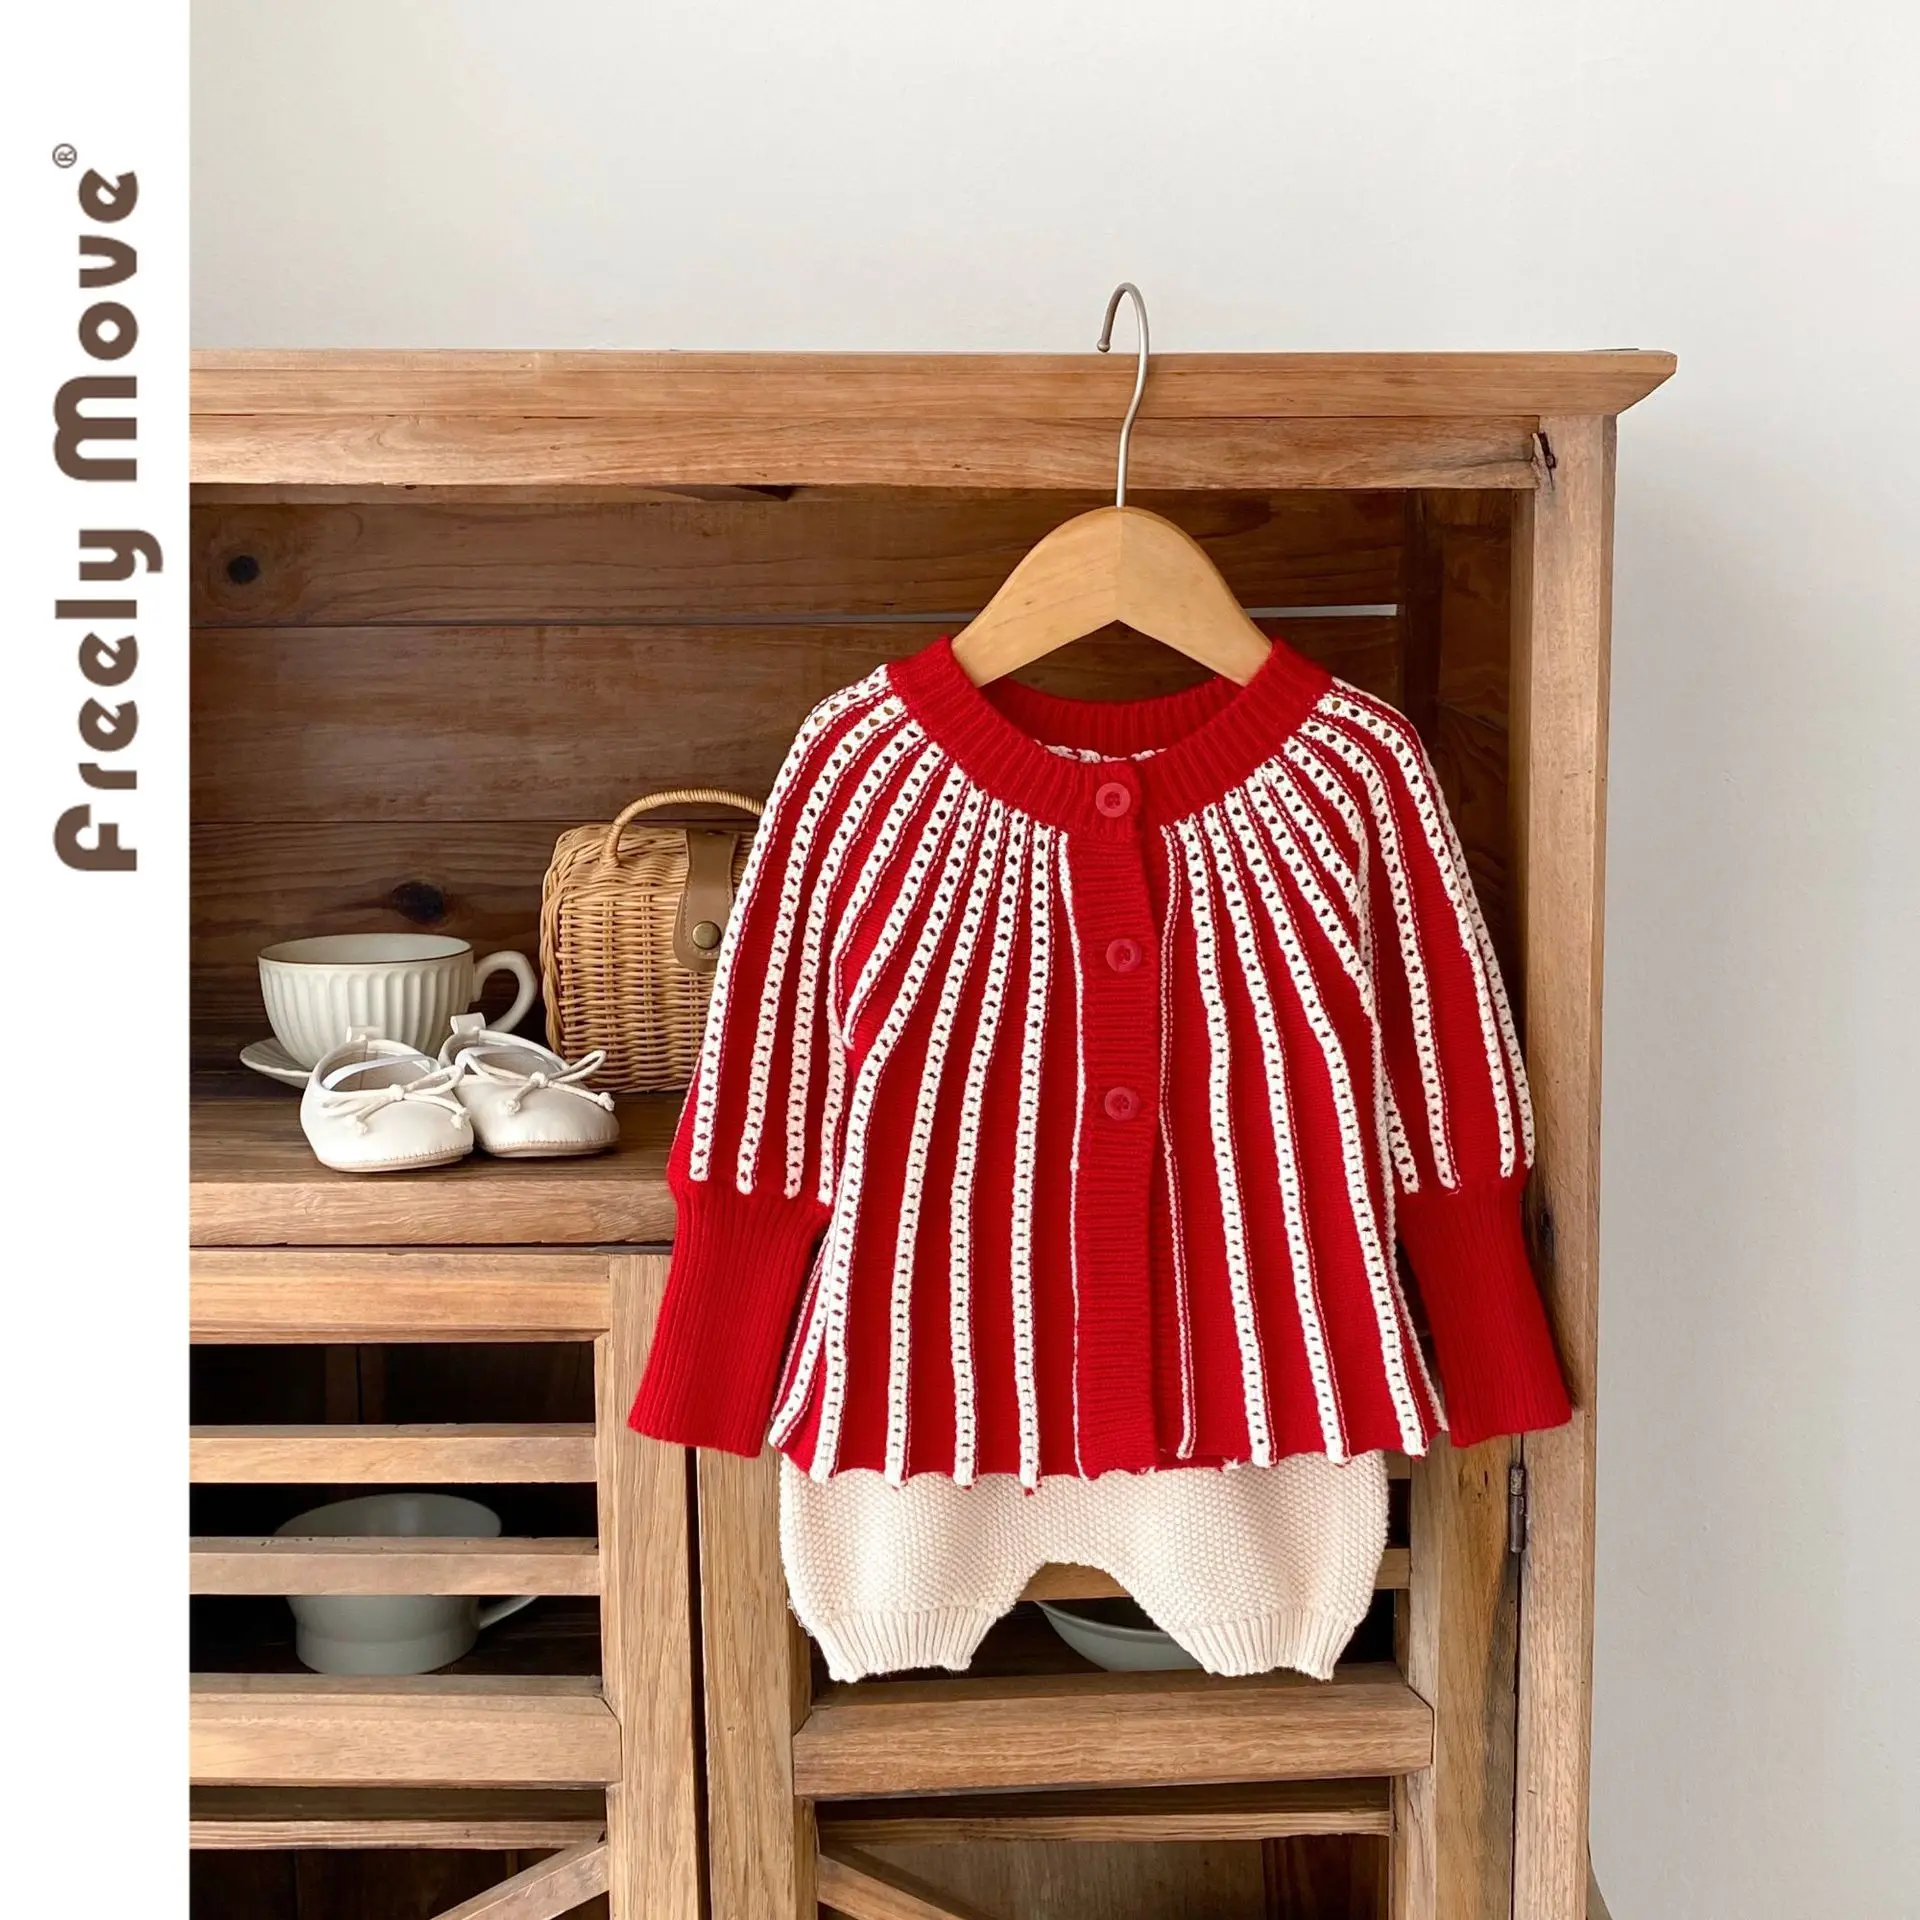 Свободно Передвигающаяся повседневная осенняя одежда для новорожденных девочек, вязаный свитер в контрастную полоску, кардиган + Шорты-фонарики, комплект из 2 предметов,